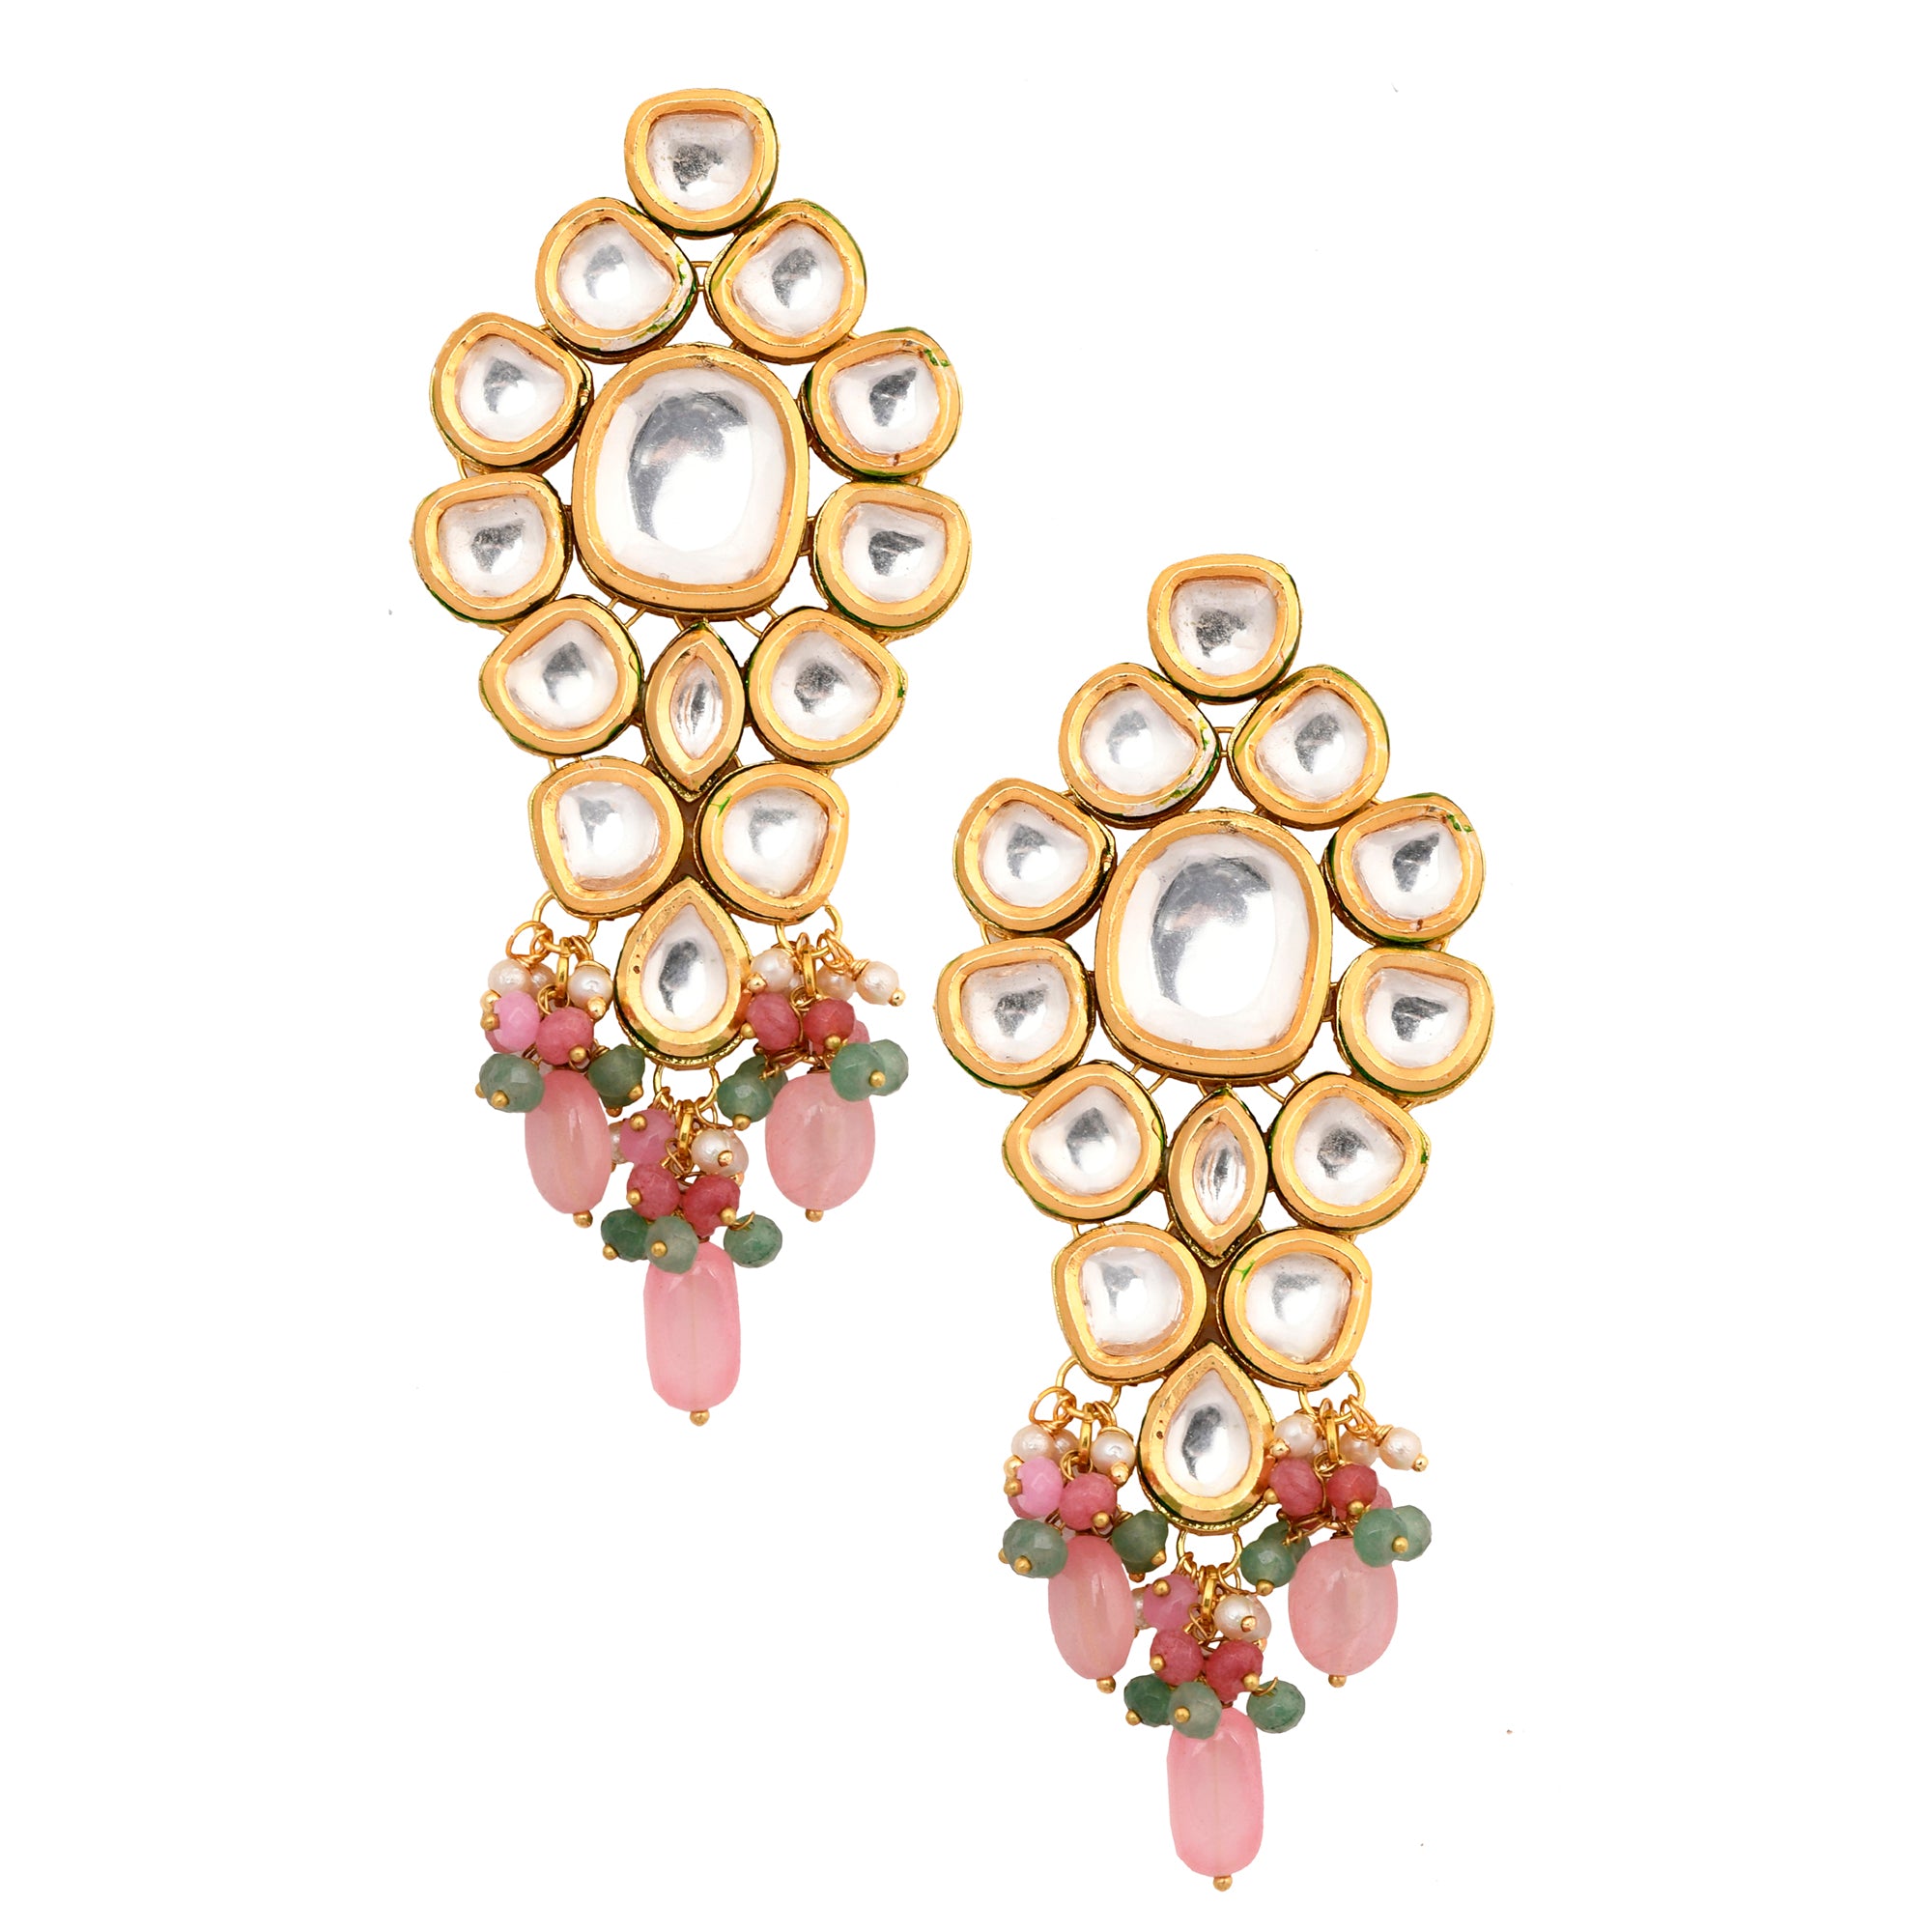 Women's Handcrafted Pink Green Gold Tone Kundan Earrings - Femizen